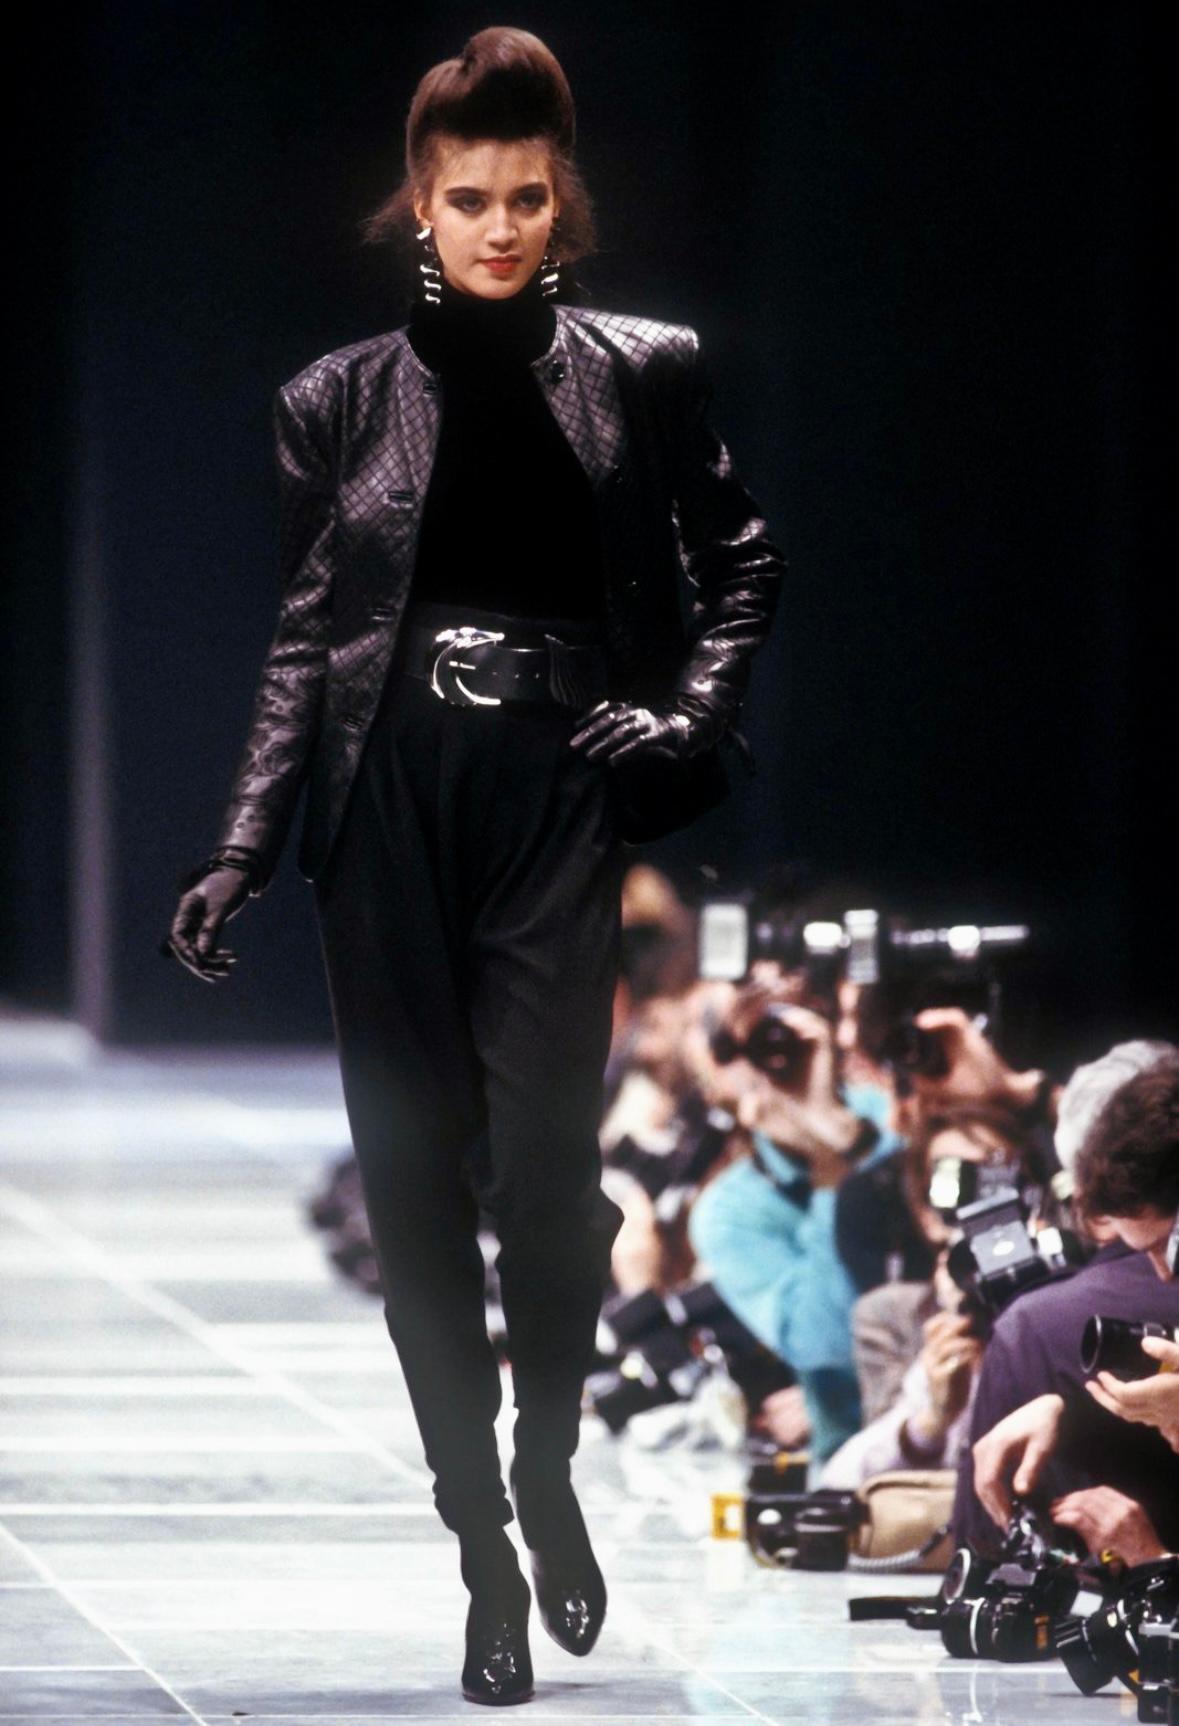 Wir präsentieren ein wunderschönes schwarzes, lederbesticktes Gianni Versace Rockset, entworfen von Gianni Versace. Diese Jacke aus der Herbst/Winter-Kollektion 1986 wurde erstmals auf dem Laufsteg der Saison gezeigt. Das Set besteht aus einer